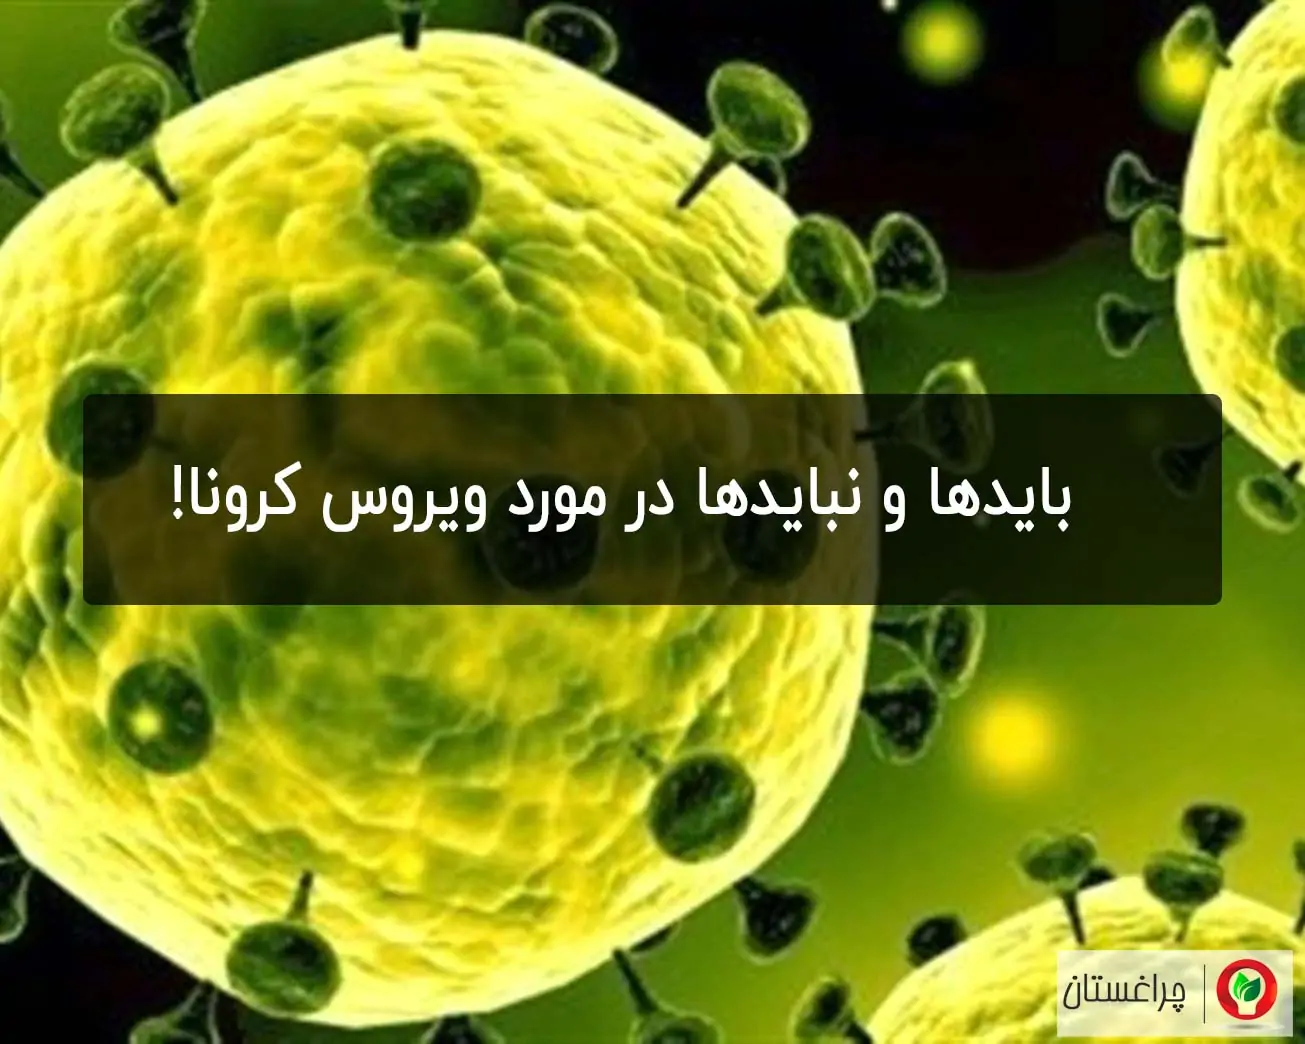 بایدها و نبایدها در مورد ویروس کرونا